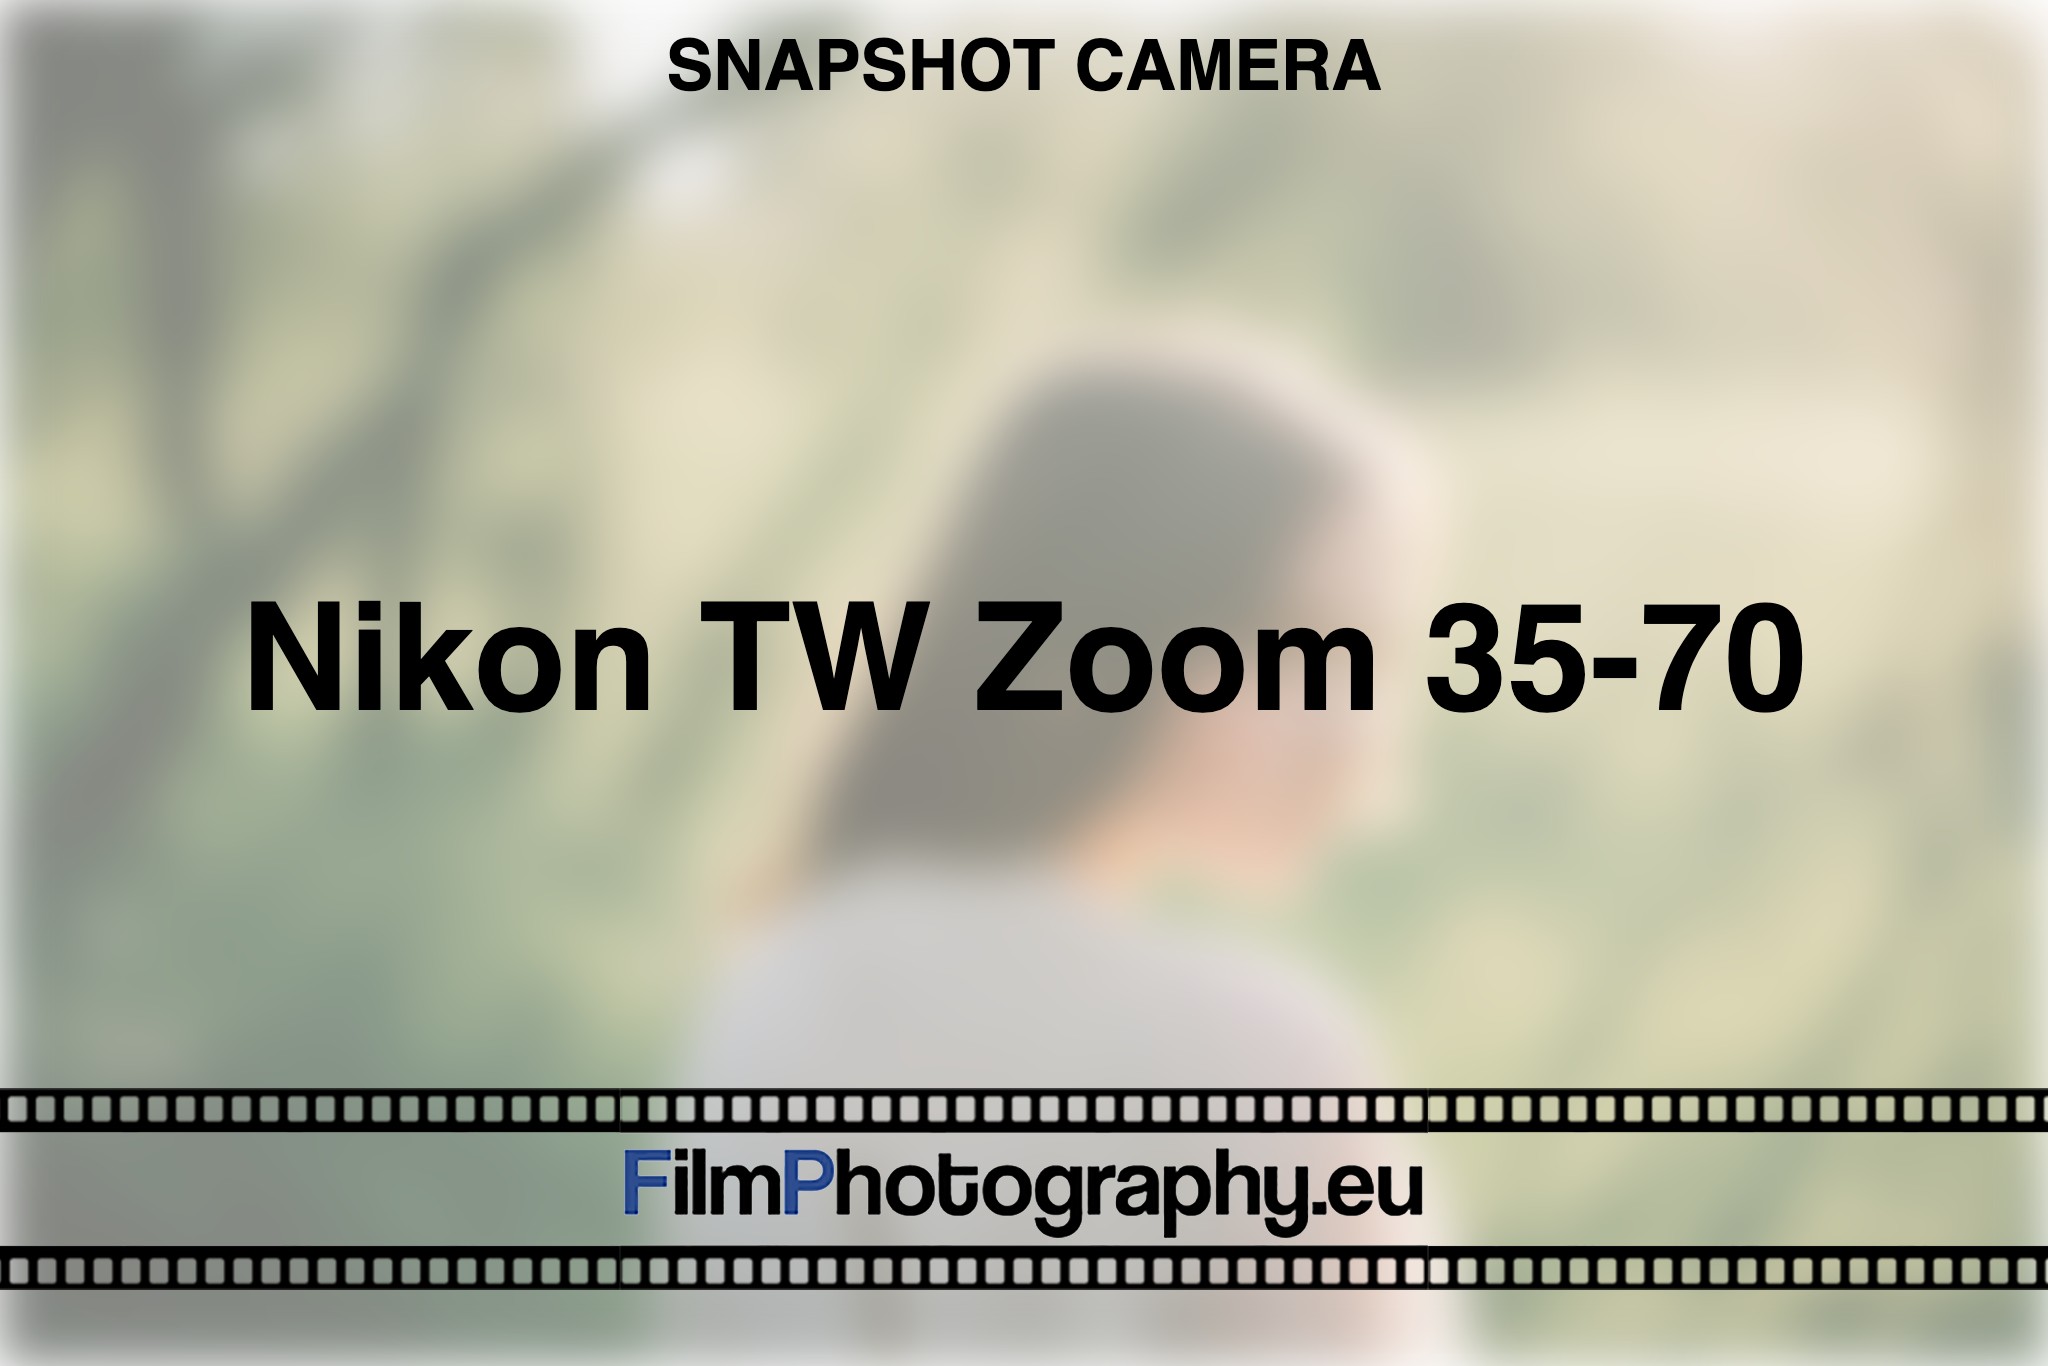 nikon-tw-zoom-35-70-snapshot-camera-bnv